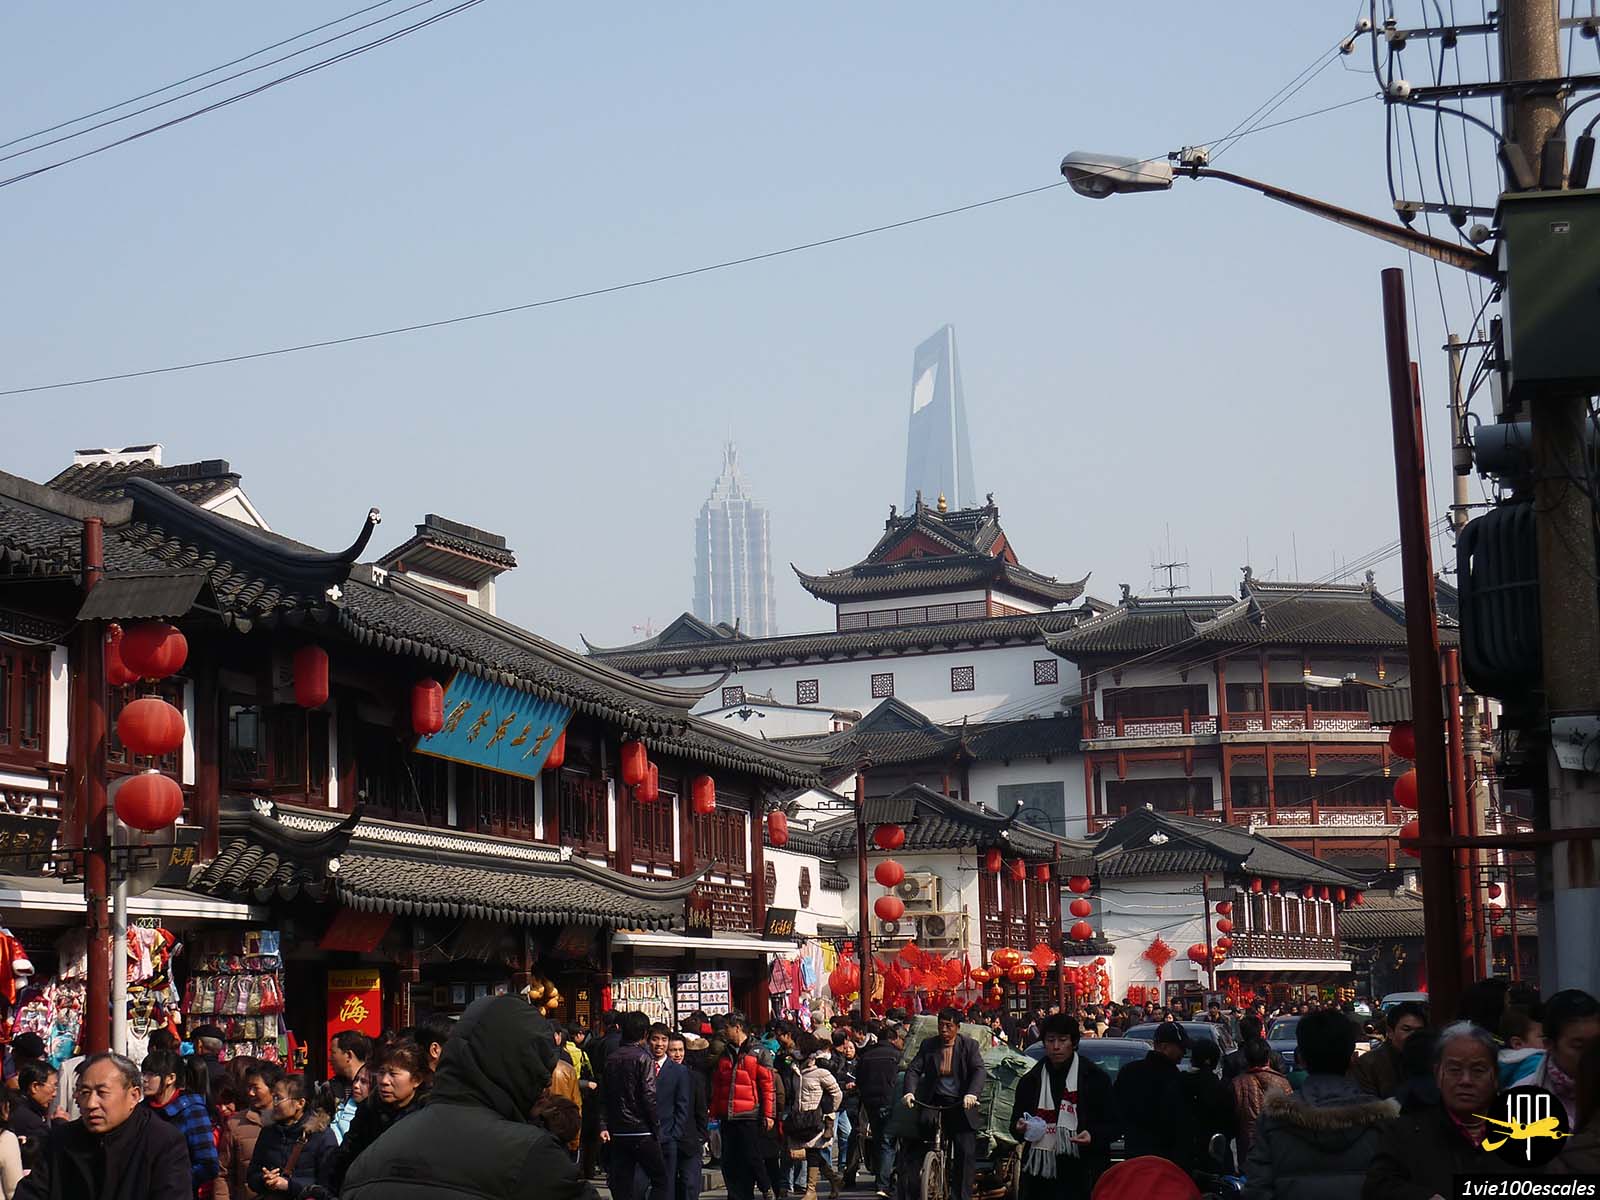 La vieille rue Yuyuan avec ses boutiques et ses lampions rouges